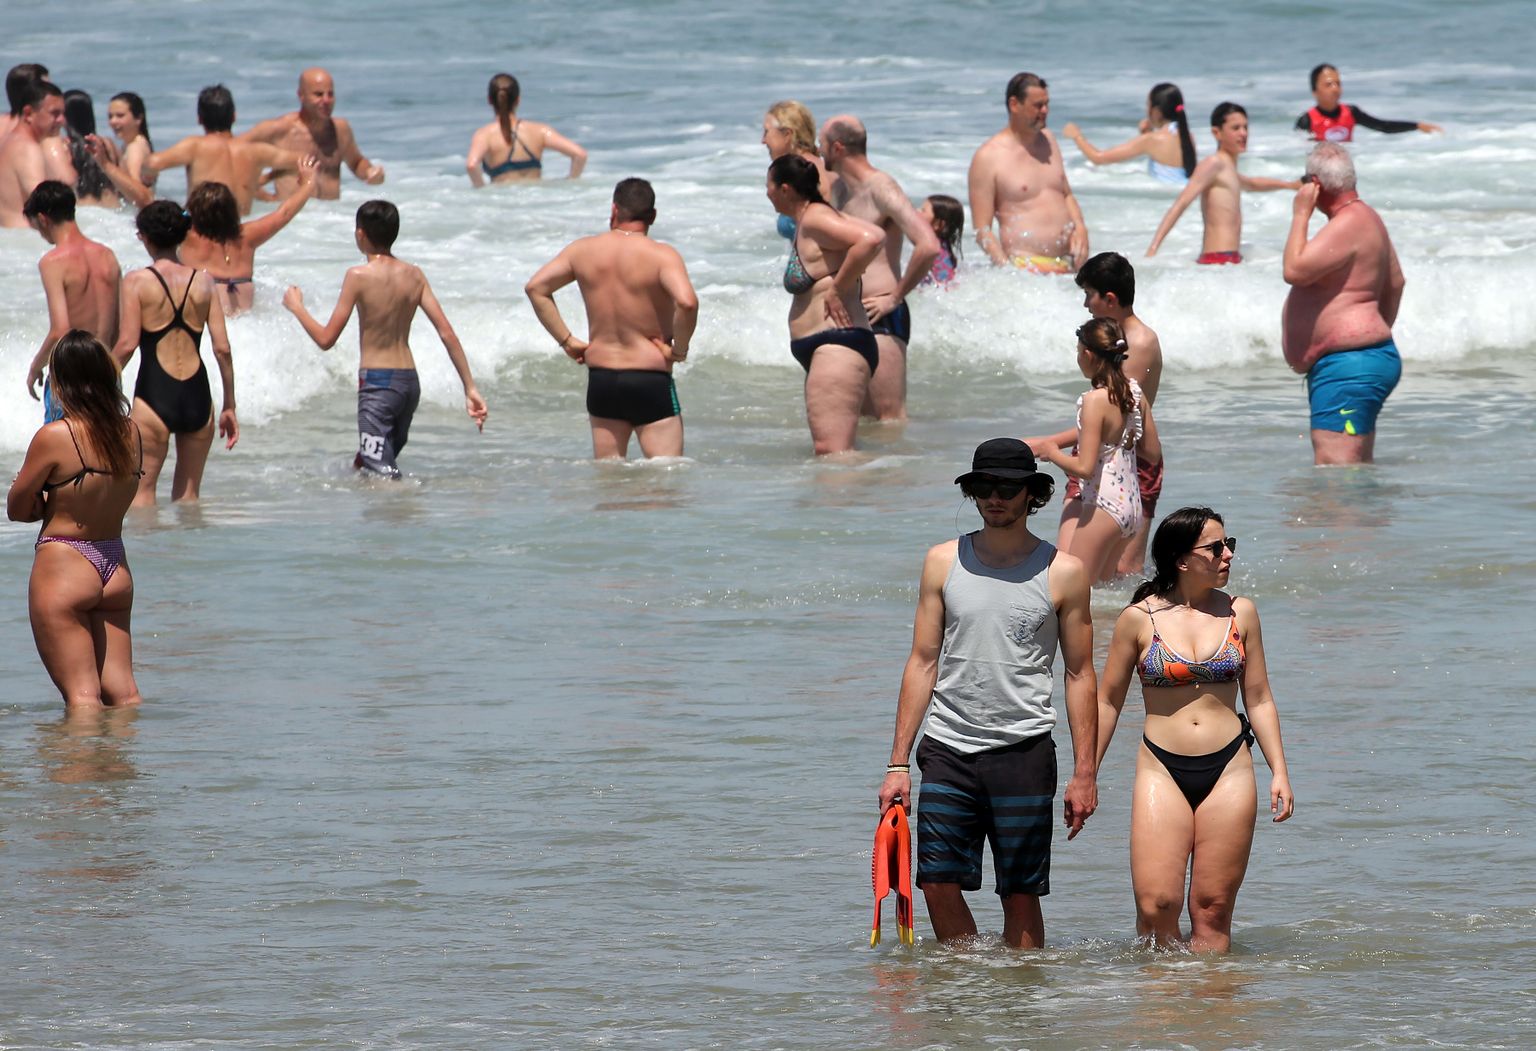 Inimesed meres end jahutamas Lõuna-Prantsusmaal Biarritzis. Foto on tehtud 18. mail 2022. Prantsusmaal on mai kohta kõrged temperatuurid